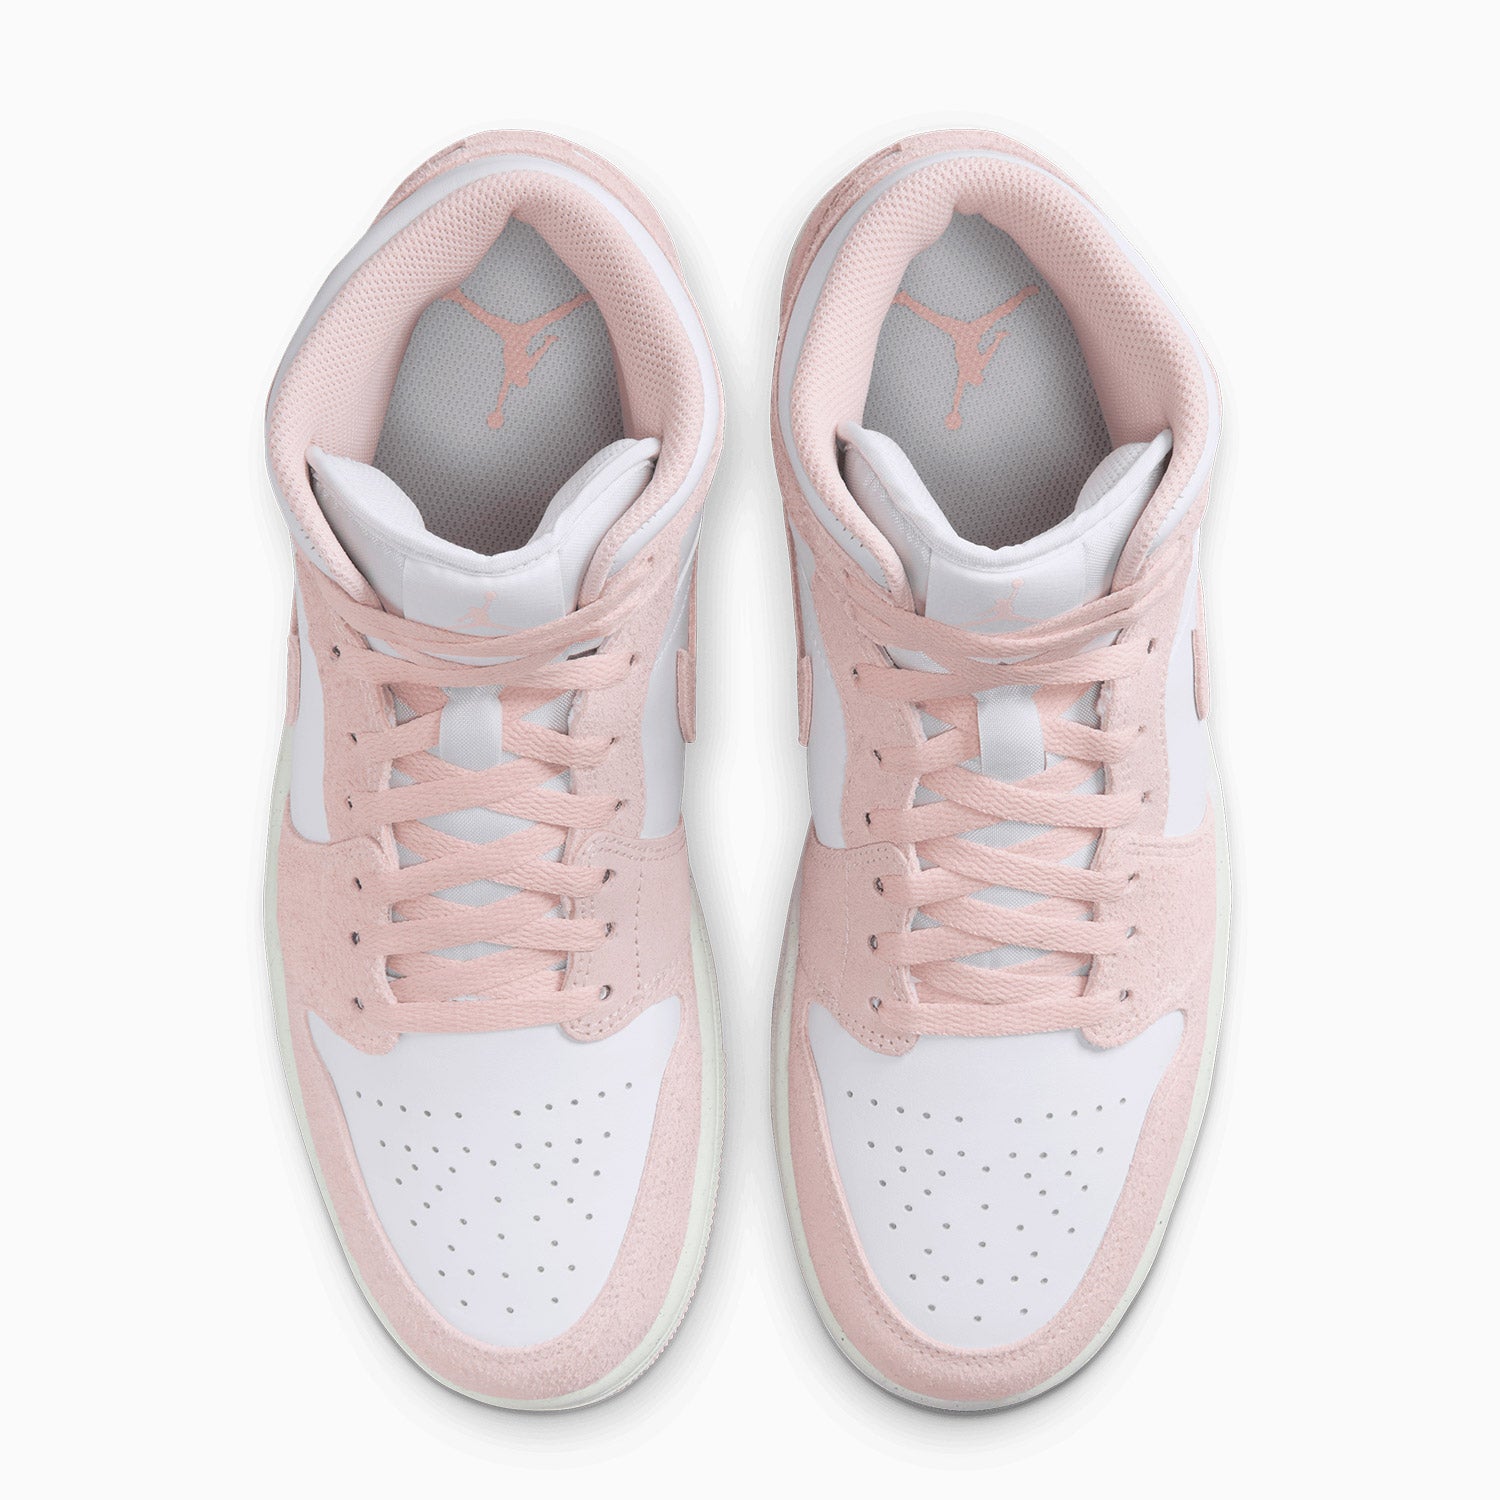 mens-air-jordan-1-mid-se-pink-suede-shoes-fn5215-161